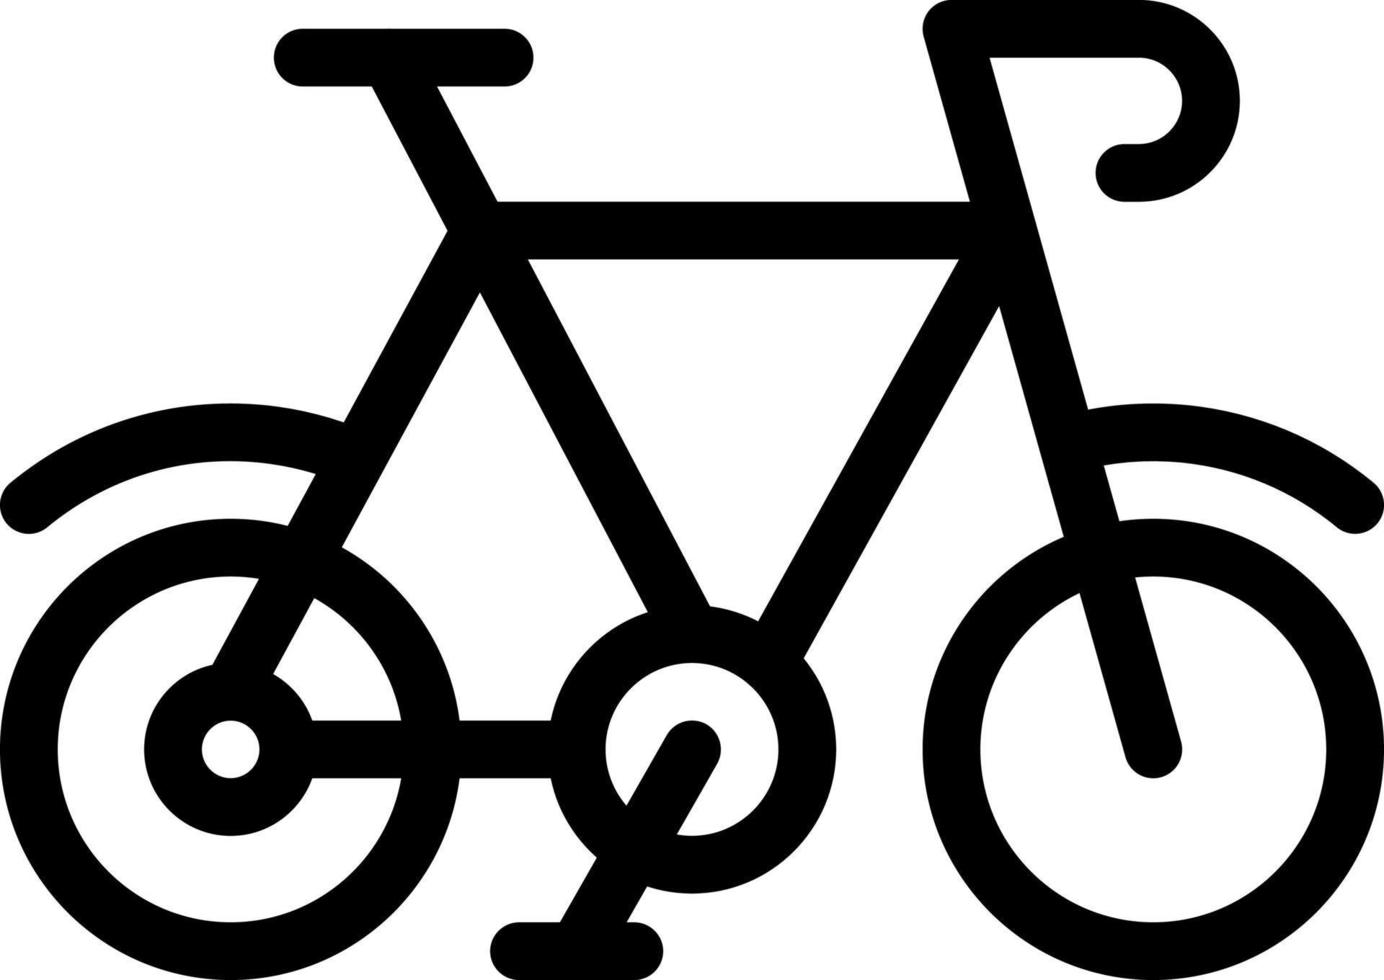 ilustração vetorial de bicicleta em ícones de símbolos.vector de qualidade background.premium para conceito e design gráfico. vetor